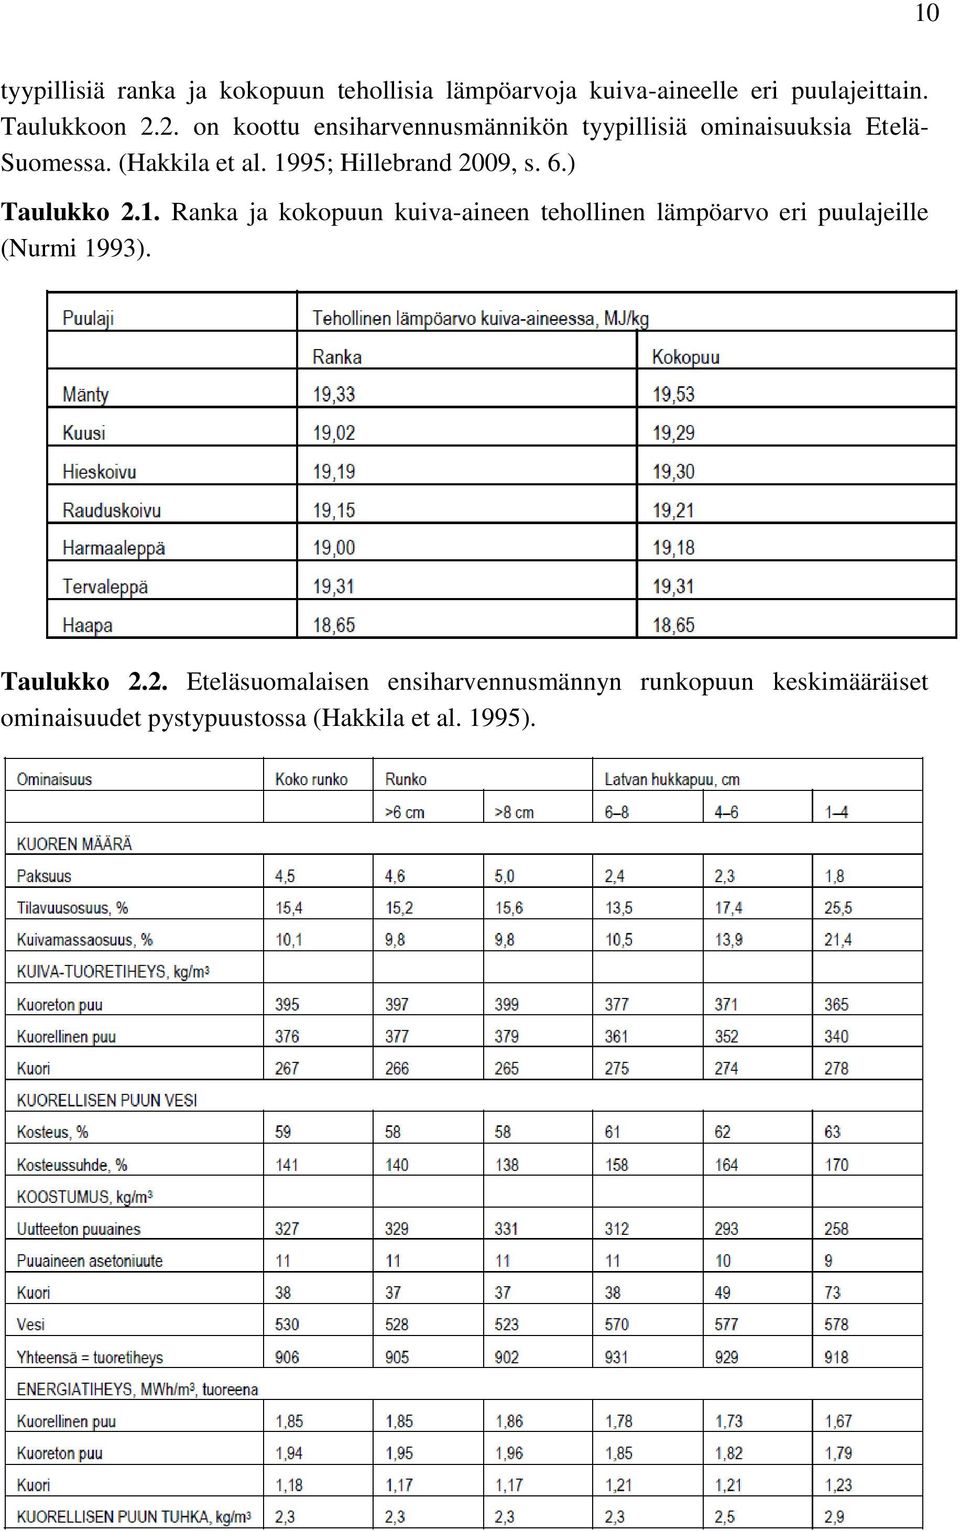 1995; Hillebrand 2009, s. 6.) Taulukko 2.1. Ranka ja kokopuun kuiva-aineen tehollinen lämpöarvo eri puulajeille (Nurmi 1993).